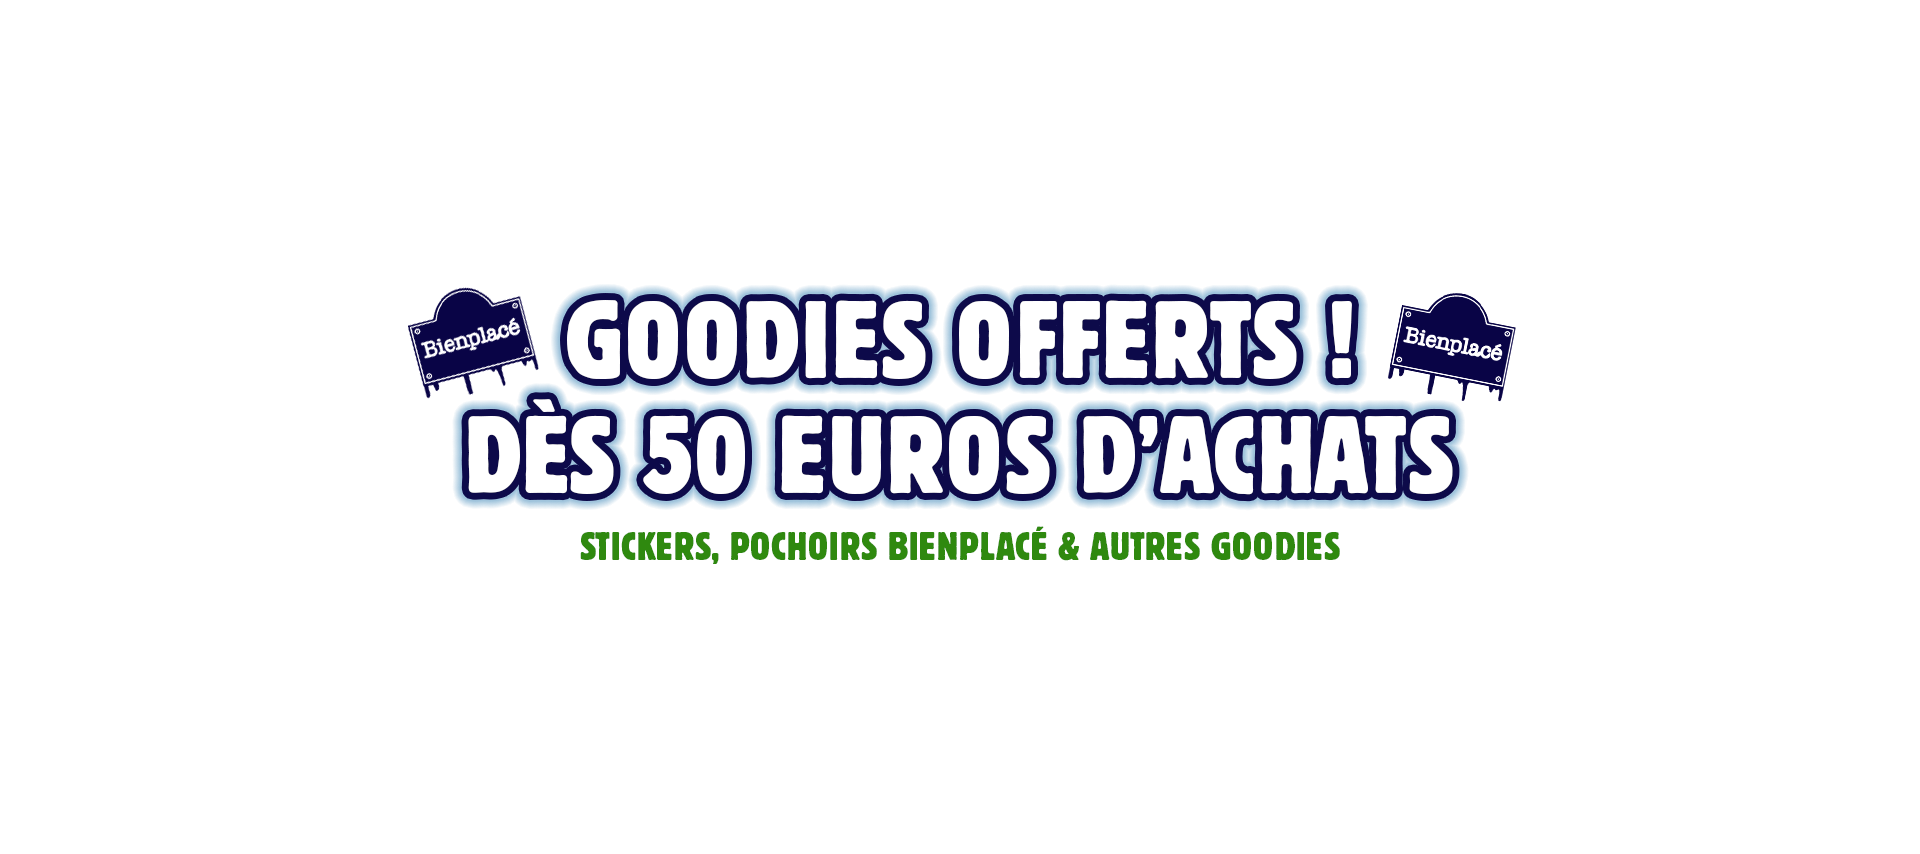 Stickers et pochoirs bienplacé offerts dès 50€